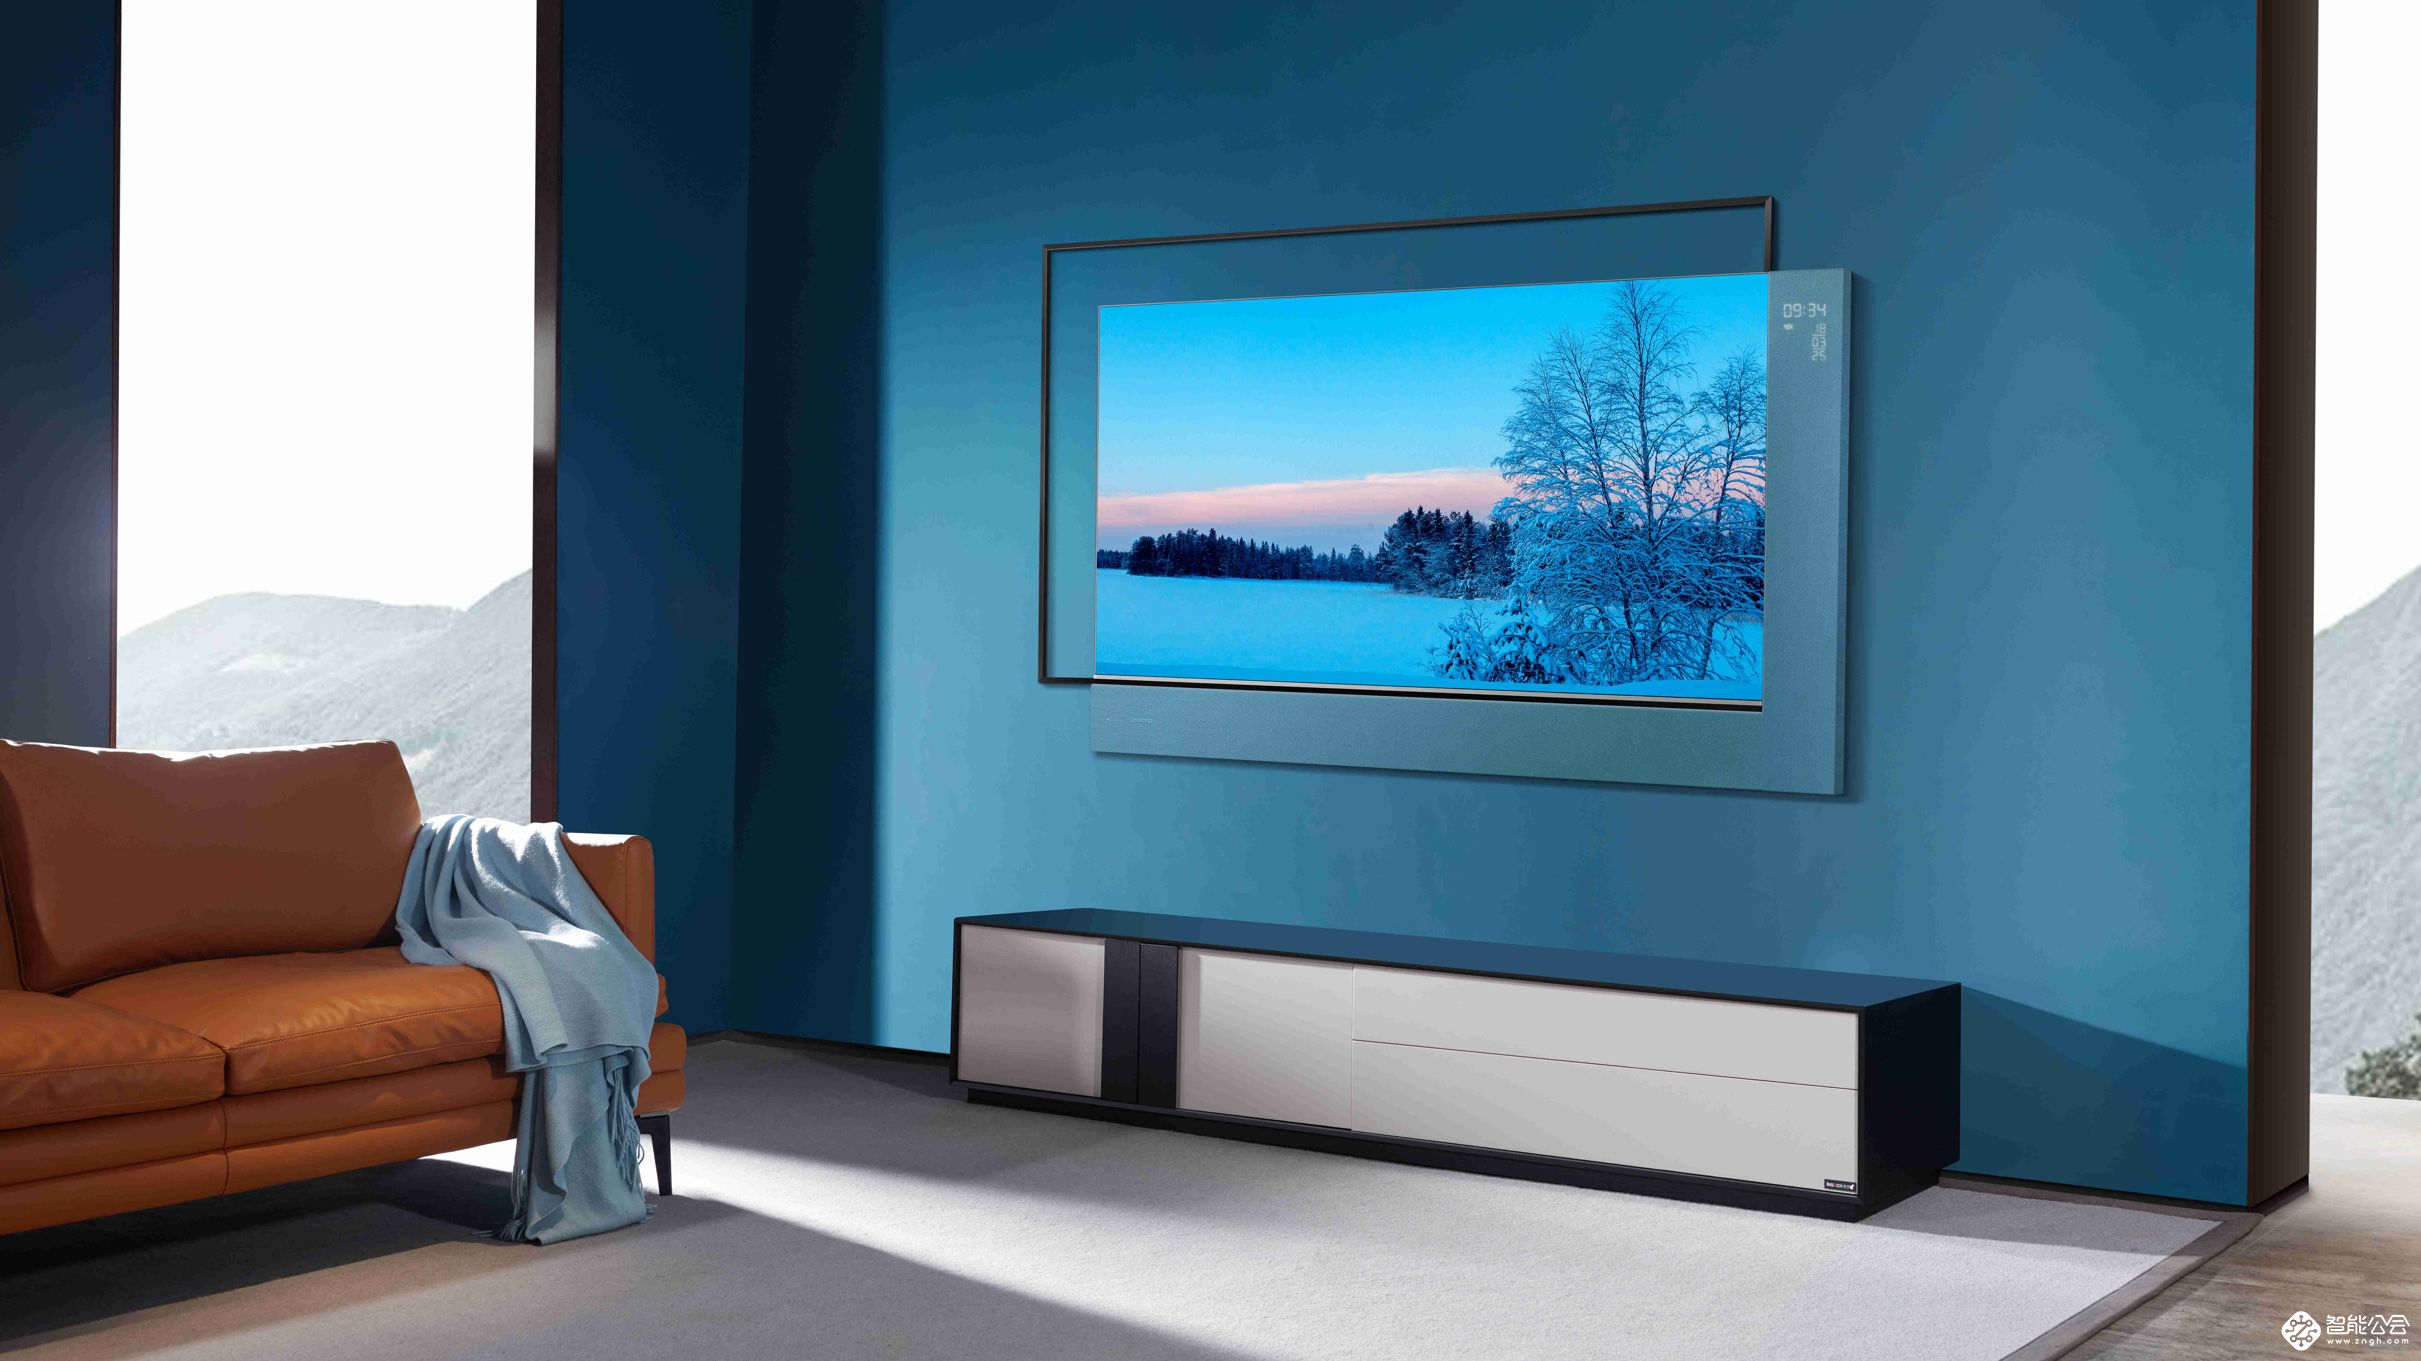 智能音响就是缺一块大屏 XESS浮窗全场景TV实现了 智能公会